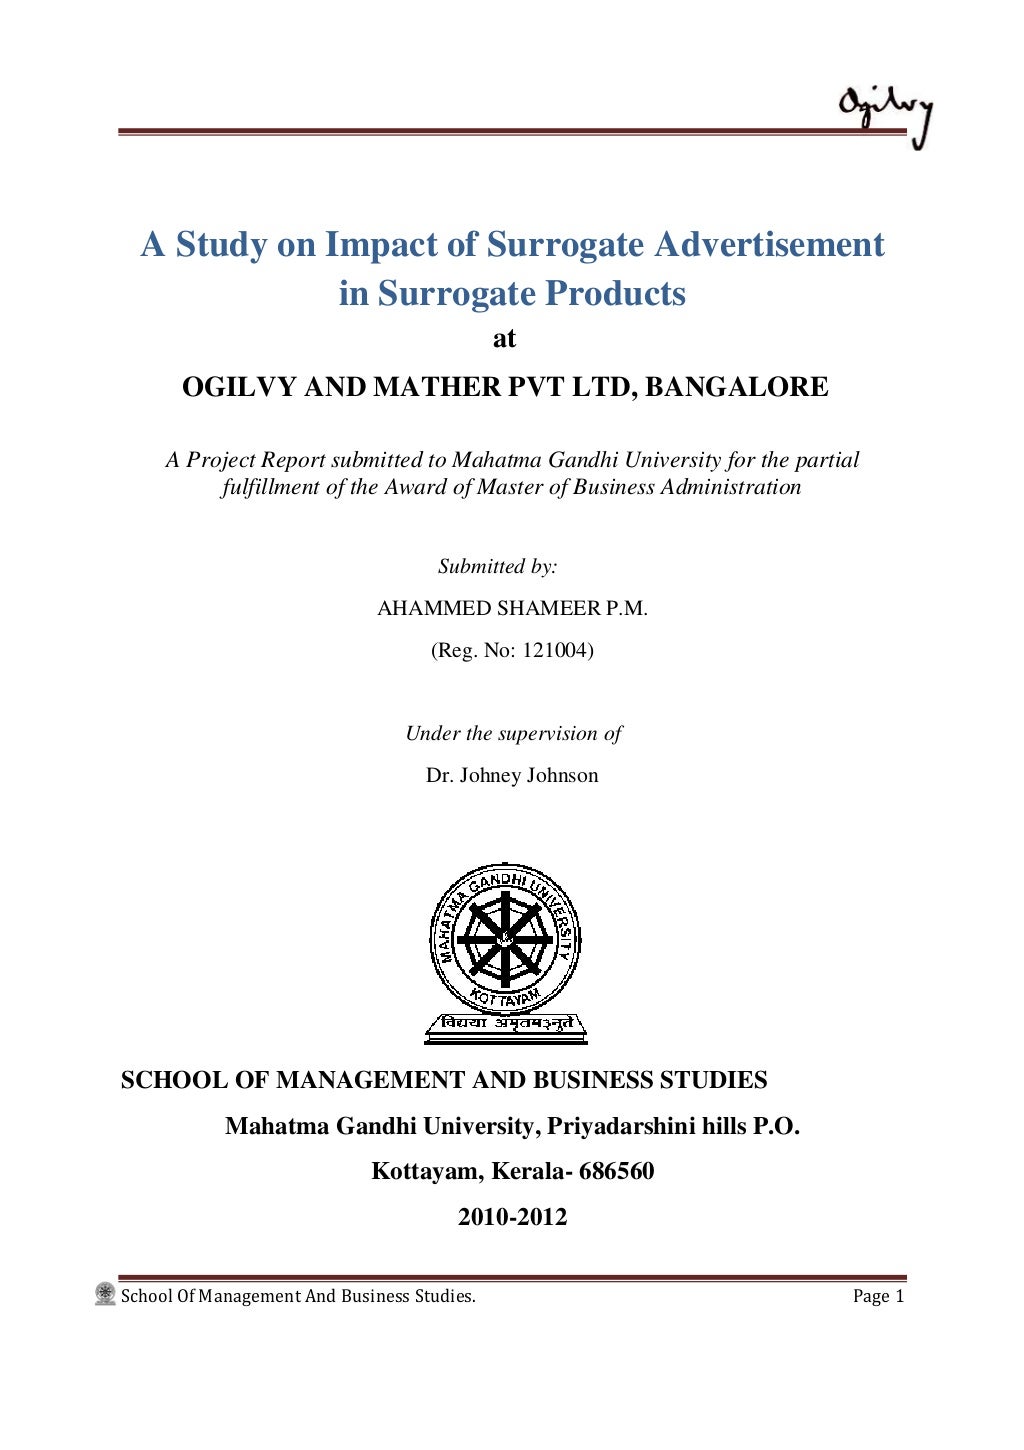 dissertation on surrogate advertising